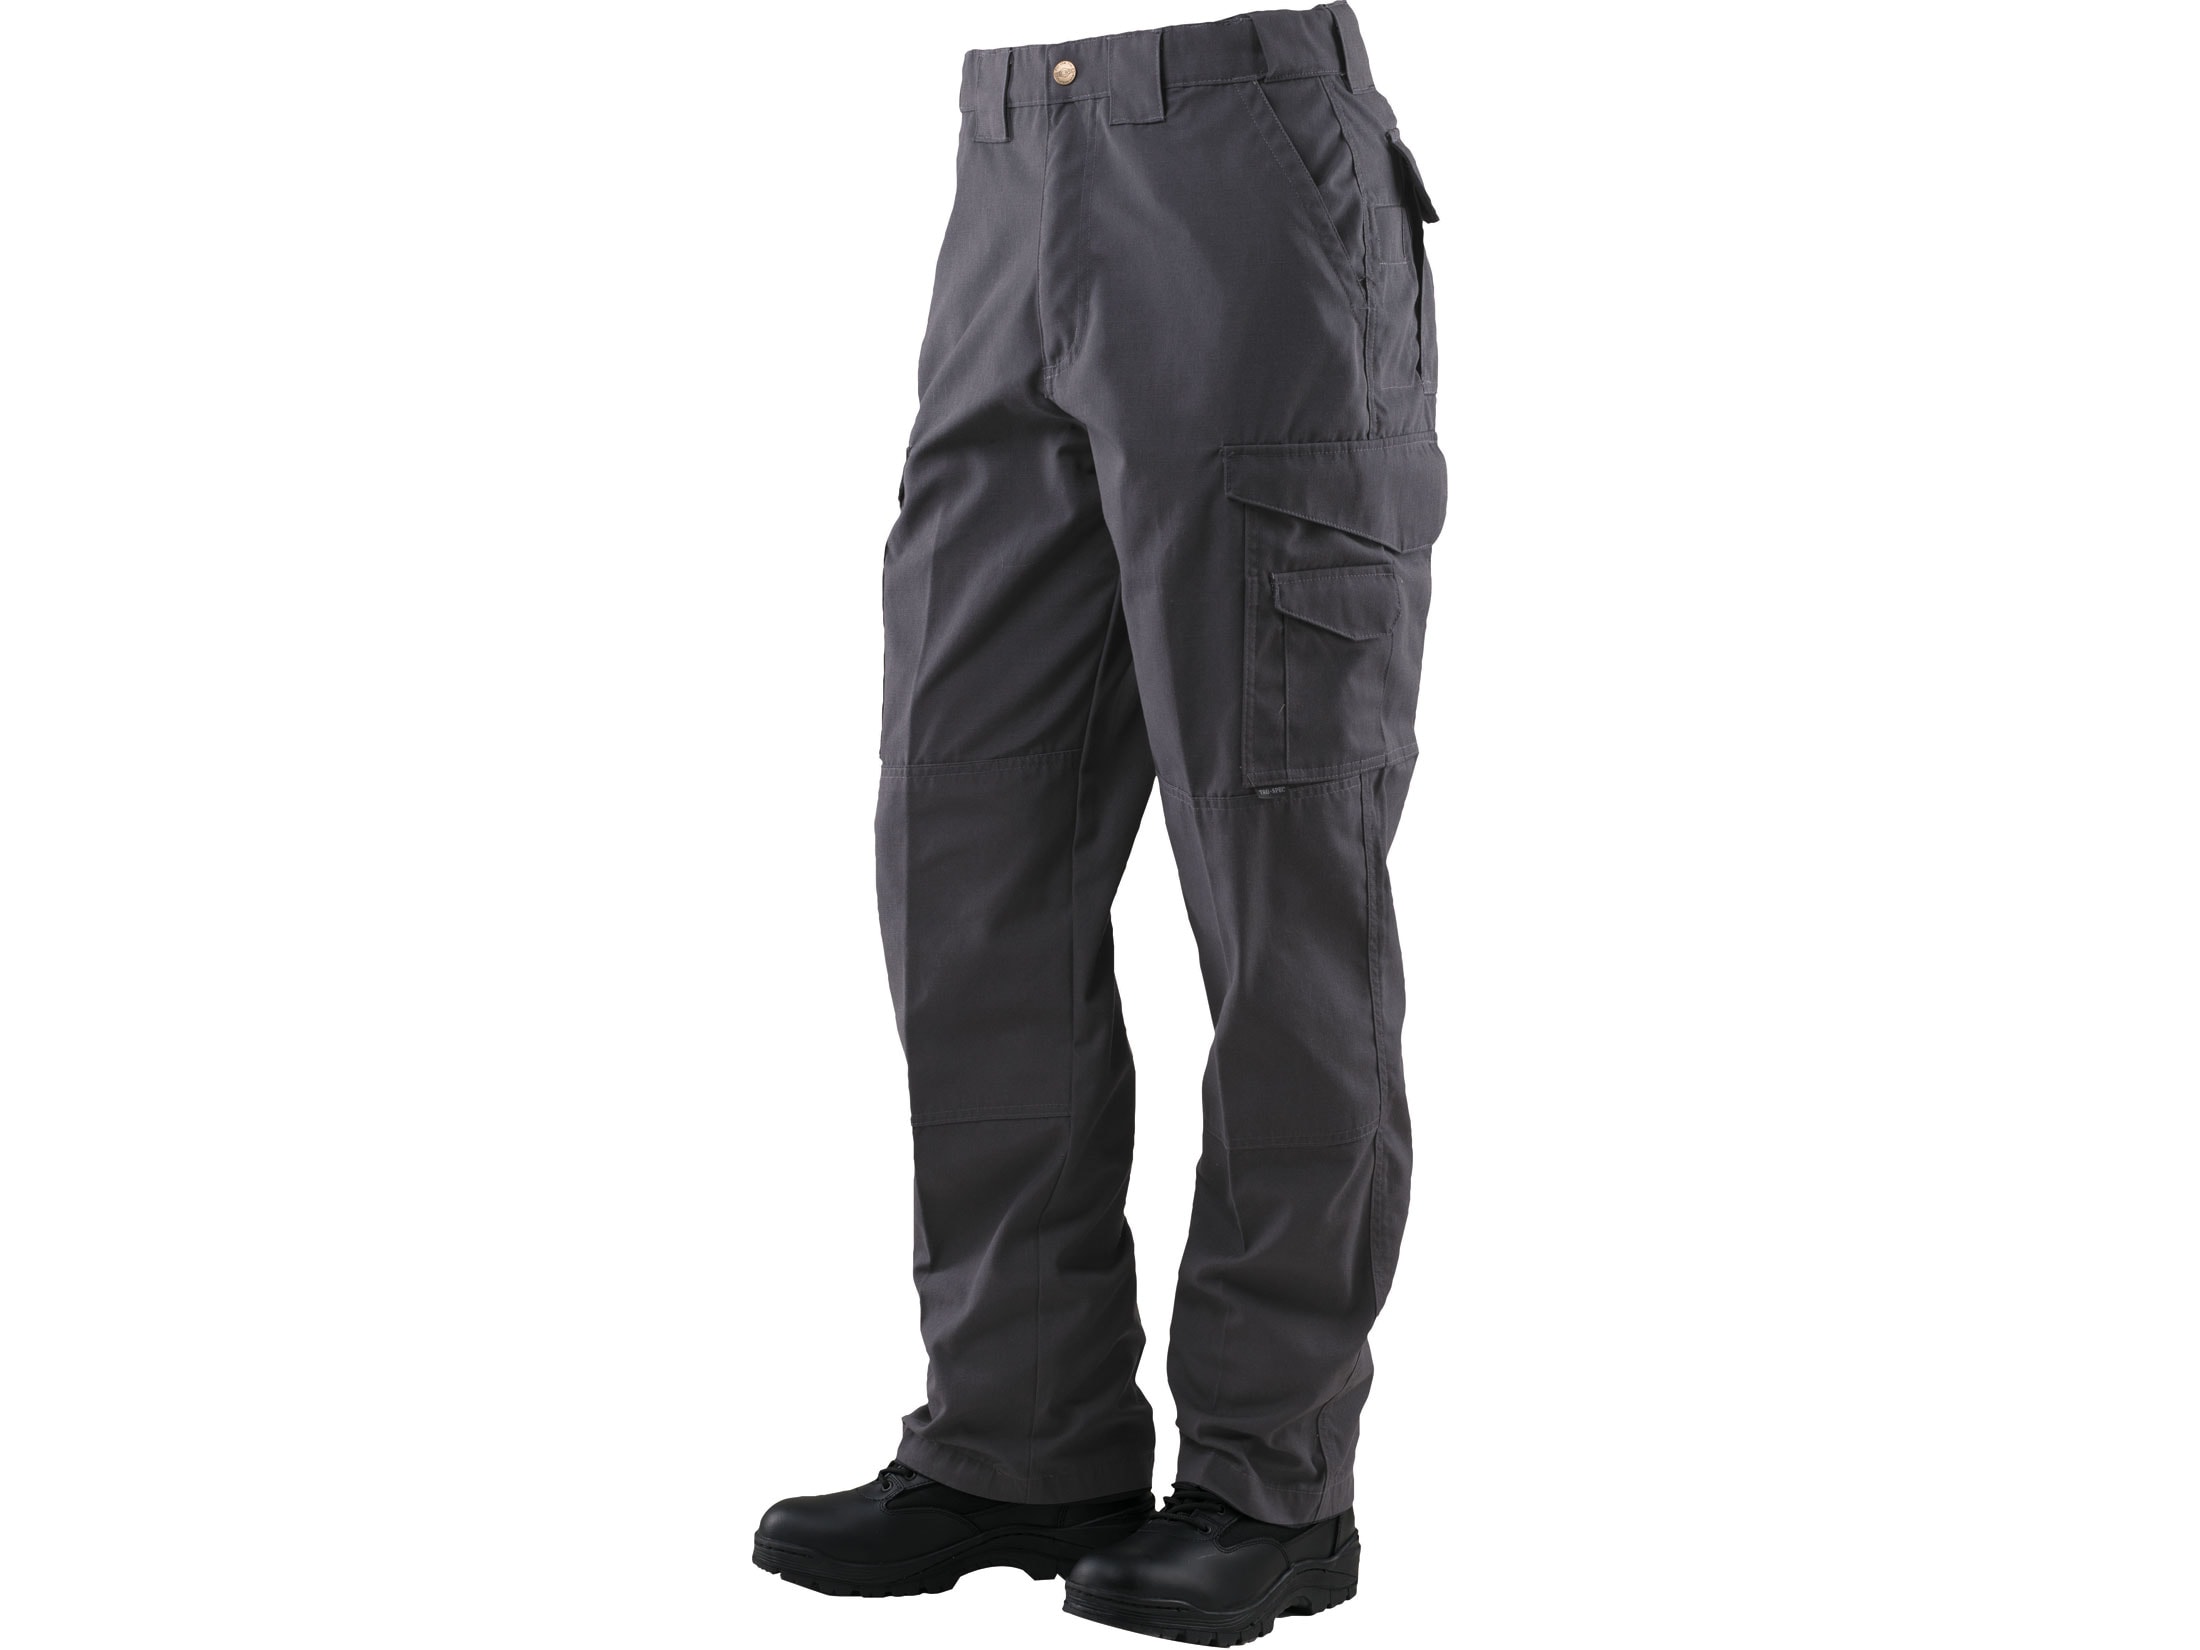 Tru-Spec Men's 24-7 Original Tactical Pants Charcoal 34 Waist 34